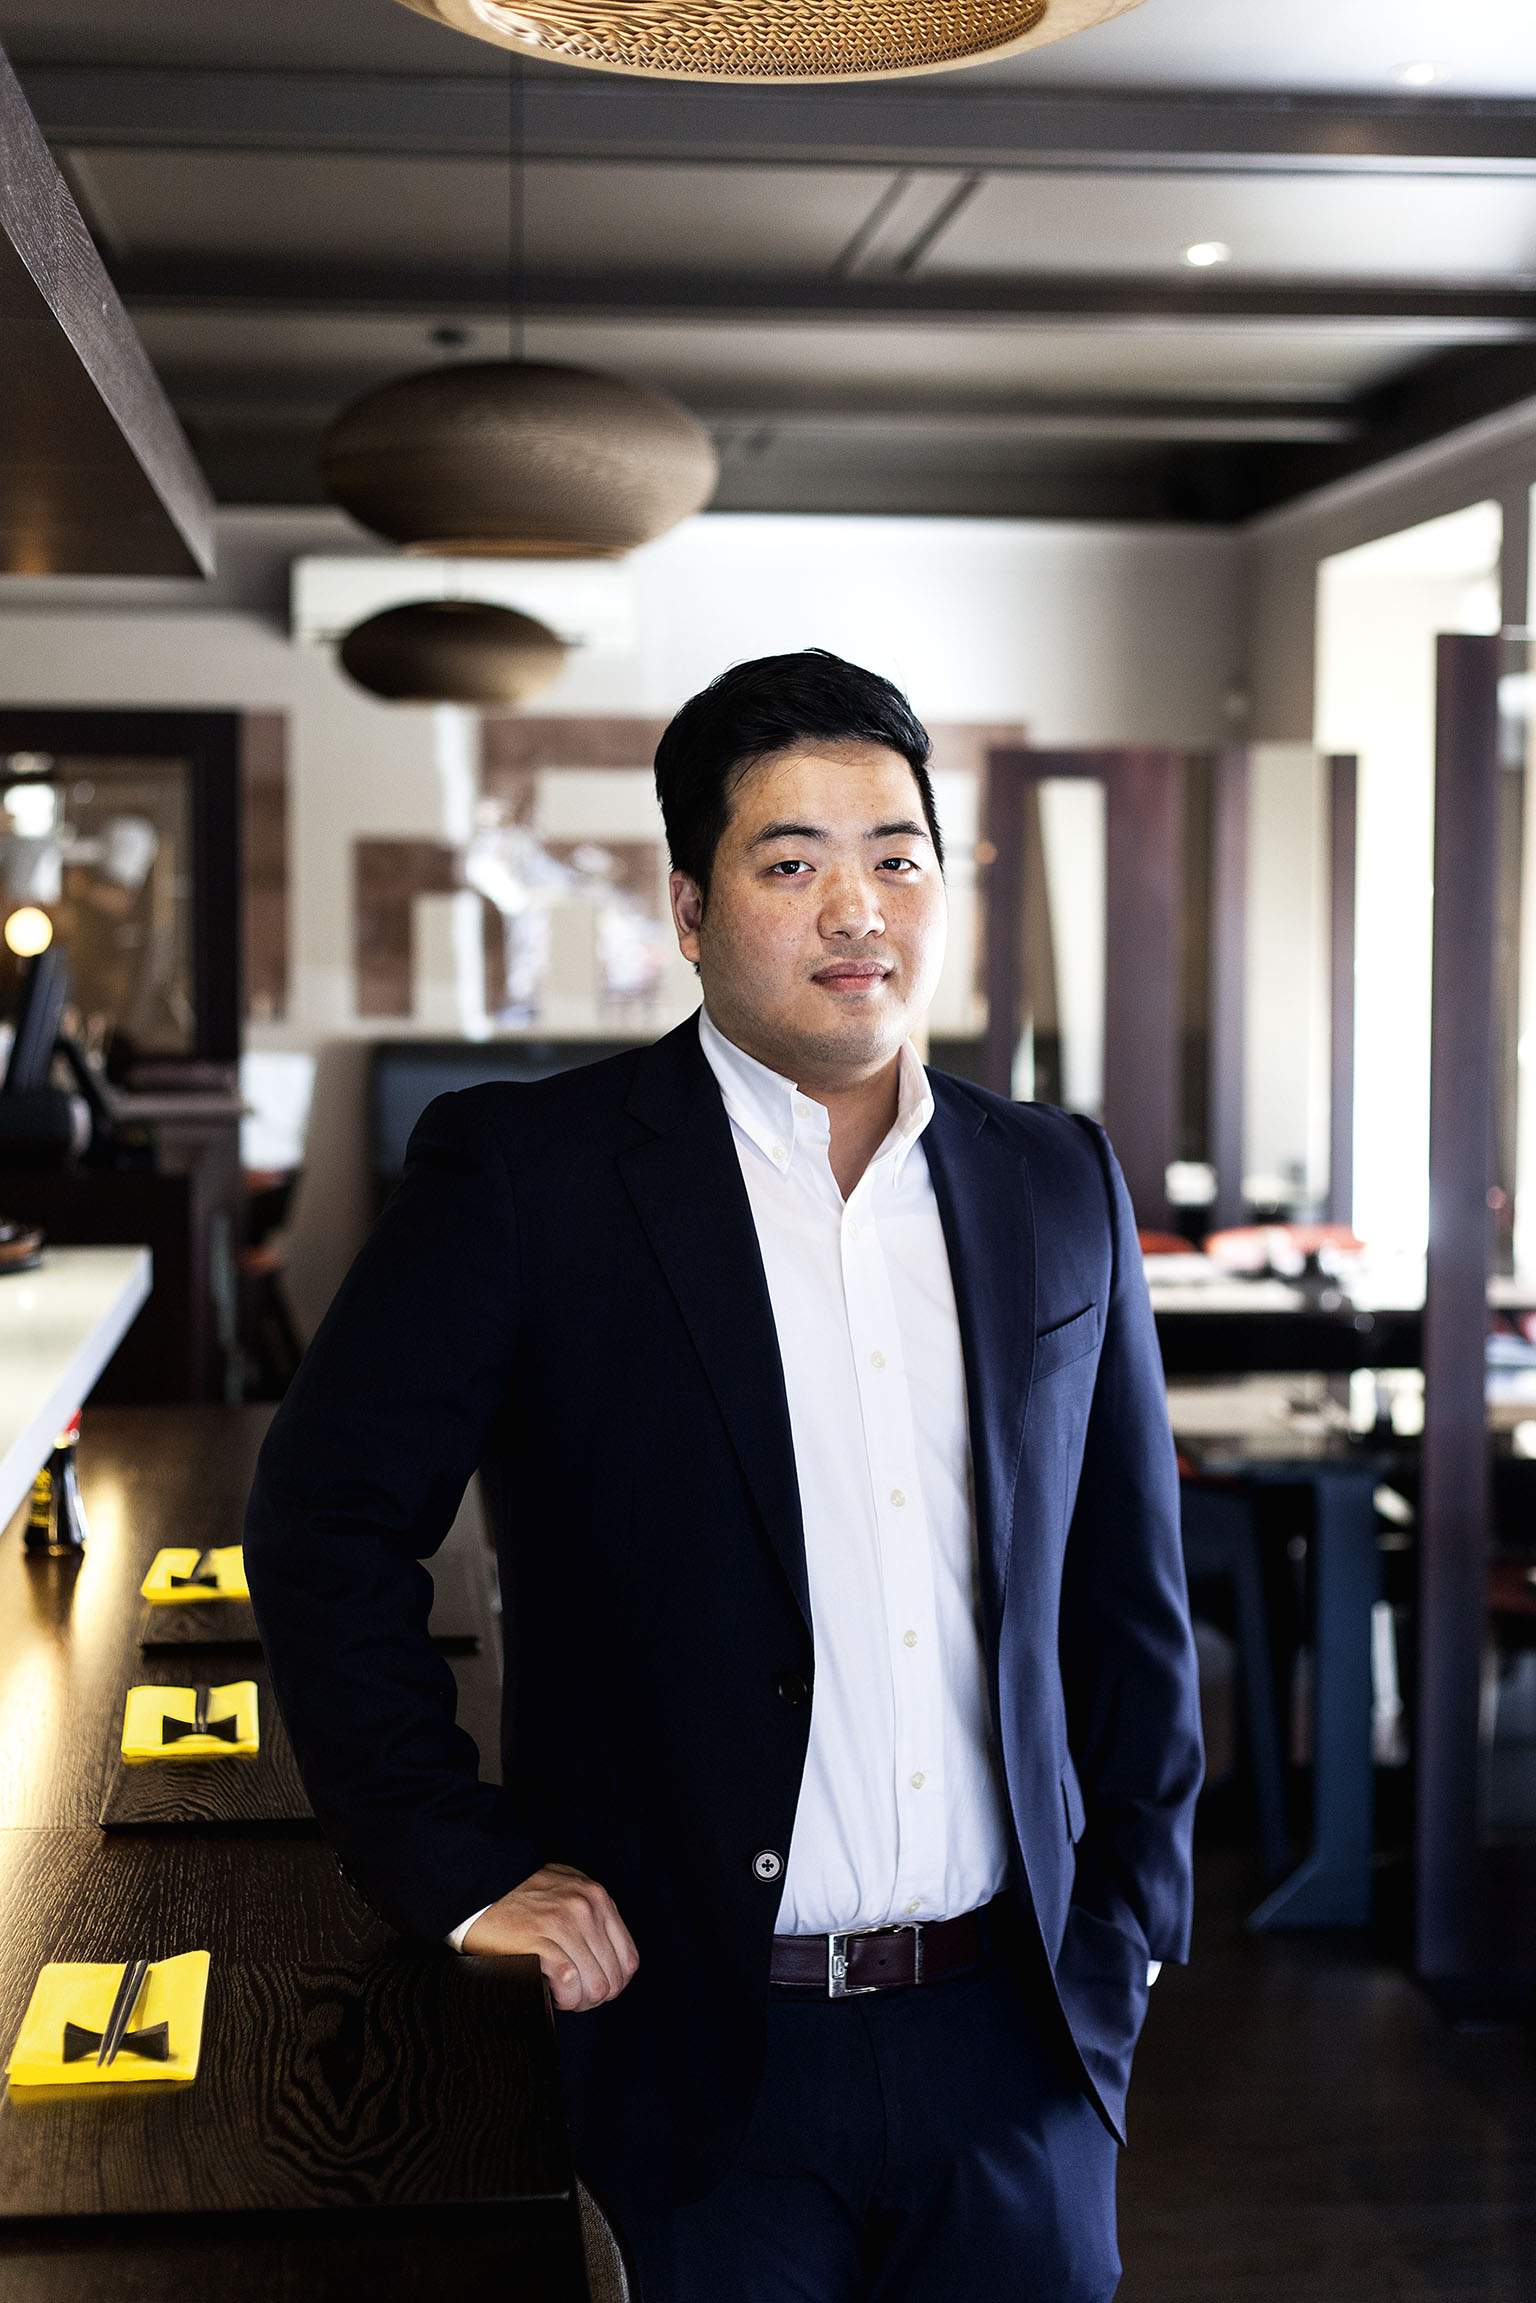 Devětadvacetiletý Euntaek Kim, který šéfuje restauraci Hanil. Vedení převzal po rodičích, podnik dostal nový design.